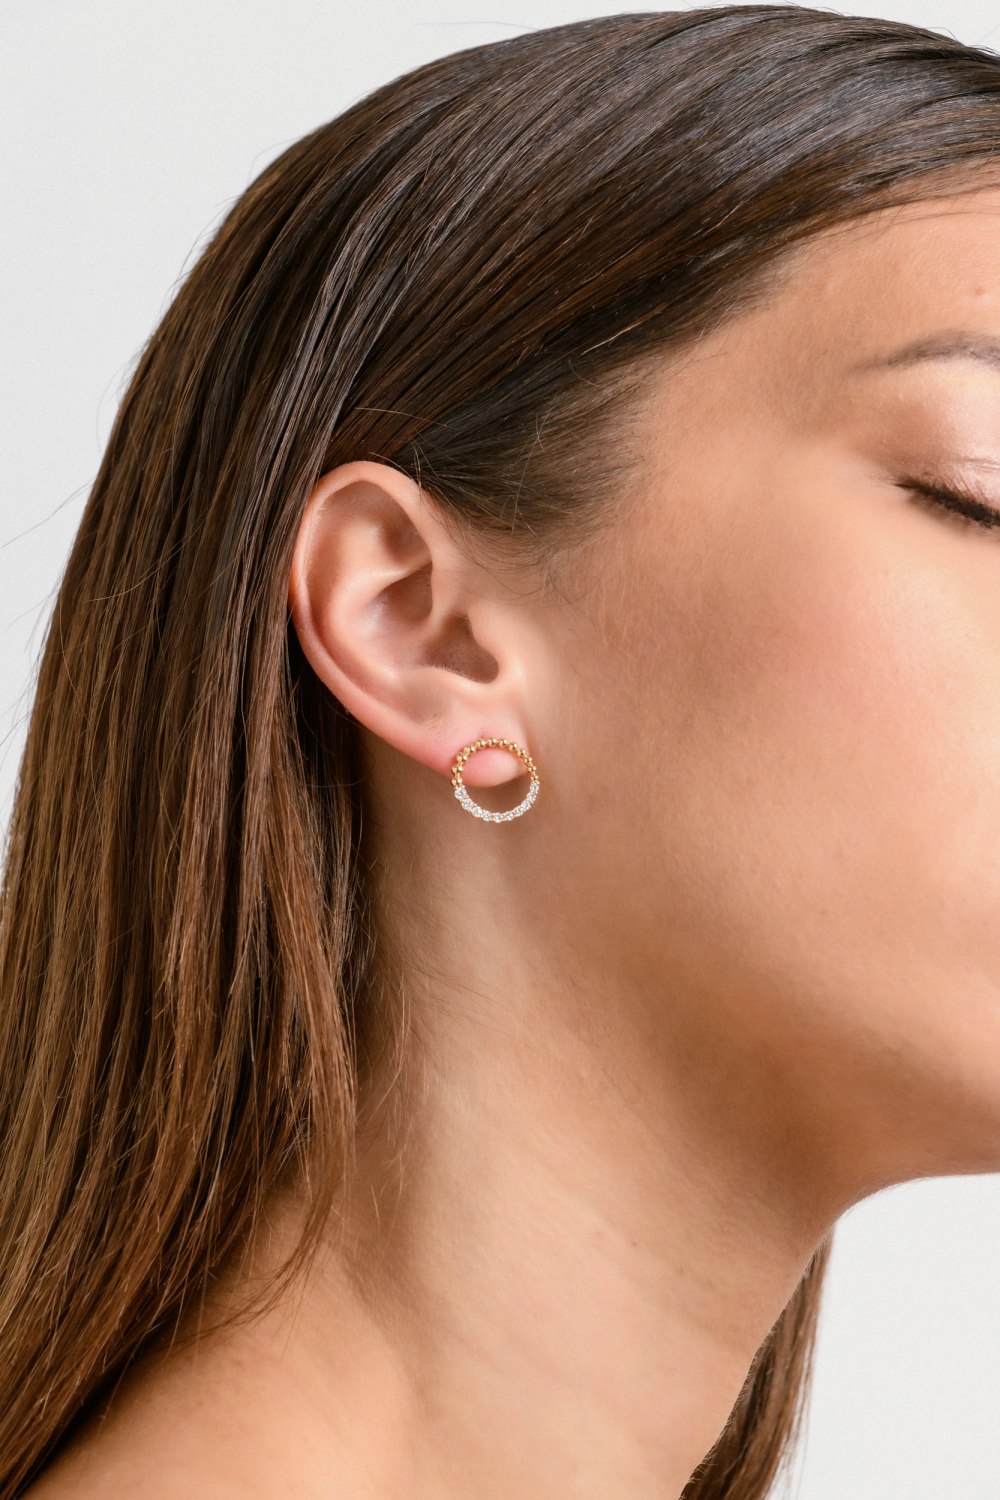 KESSARIS - Circular Gold Diamond Earrings 